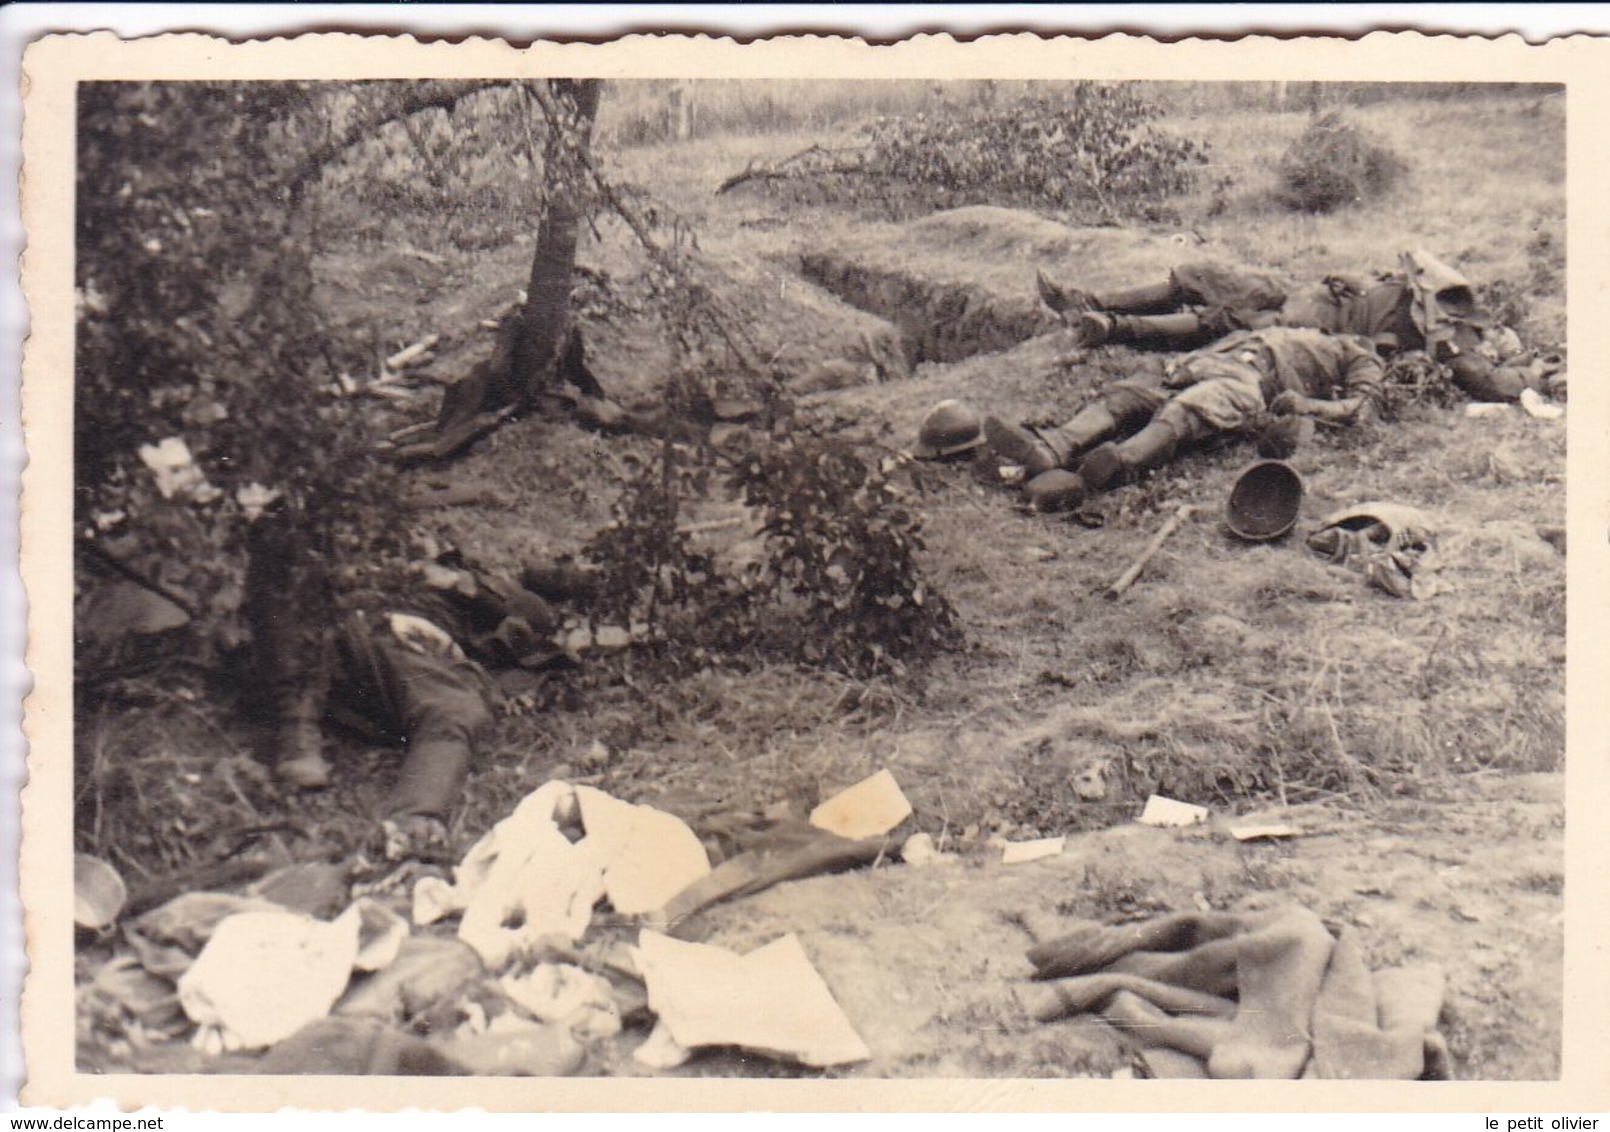 PHOTO ORIGINALE 39 / 45 WW2 WEHRMACHT FRANCE LA GUERRE EST PERDUE SOLDATS FRANCAIS MORT AU COMBAT - Guerre, Militaire